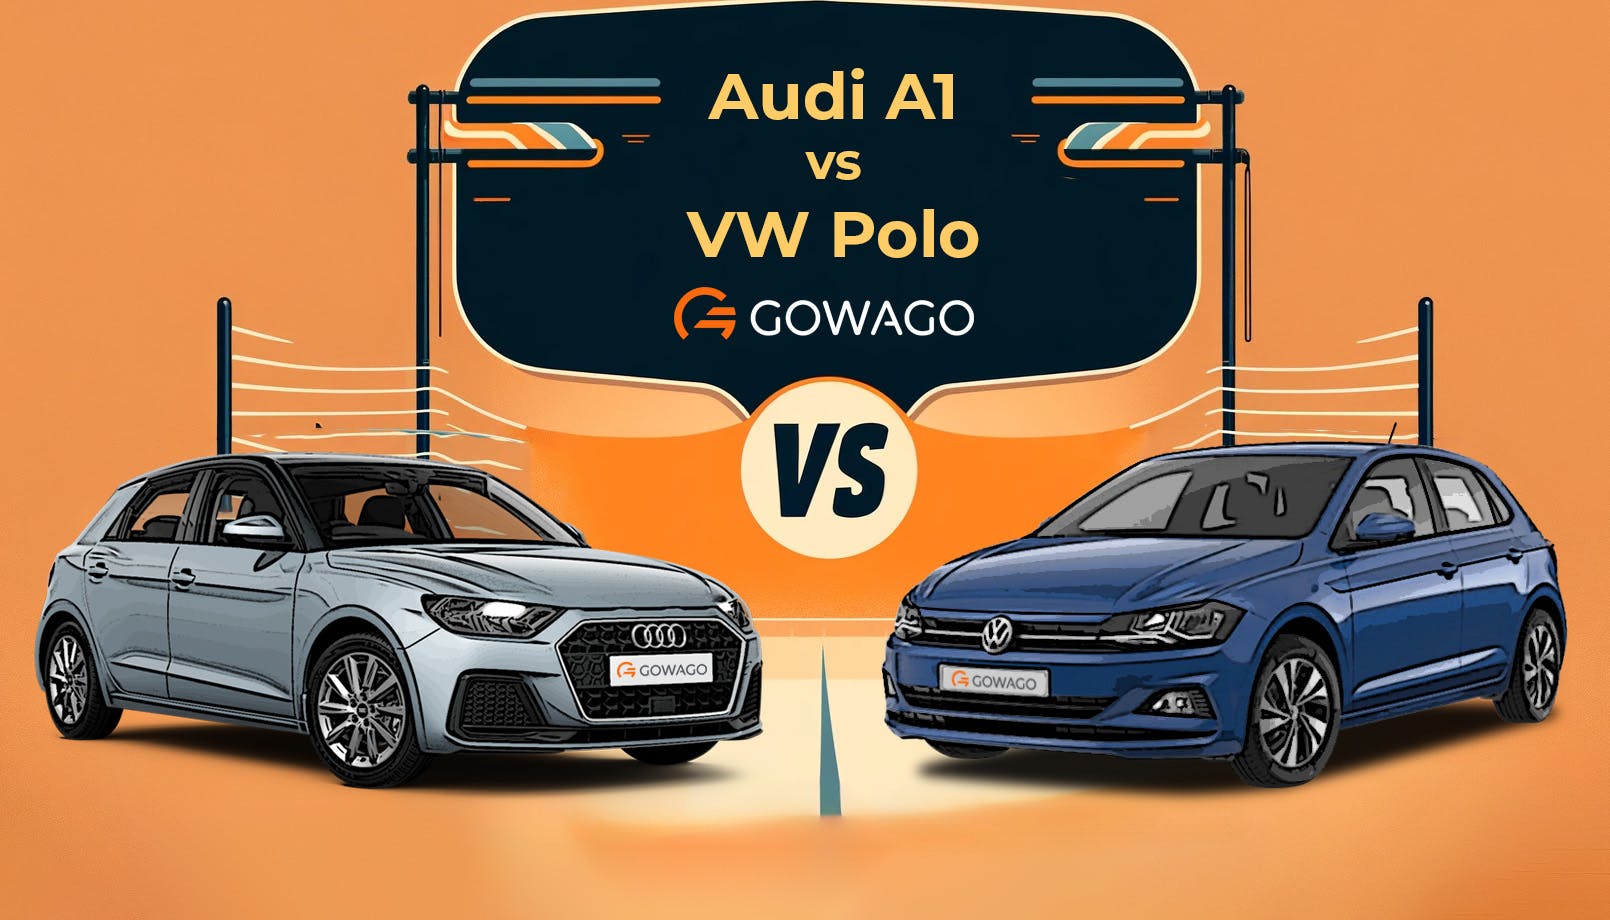 blog item card - VW Polo vs Audi A1 : Découvrez les différences dans notre comparaison détaillée. Découvrez laquelle est la meilleure en termes de praticité, de performances, de prix et d'expérience, afin de prendre la bonne décision au moment du leasing.